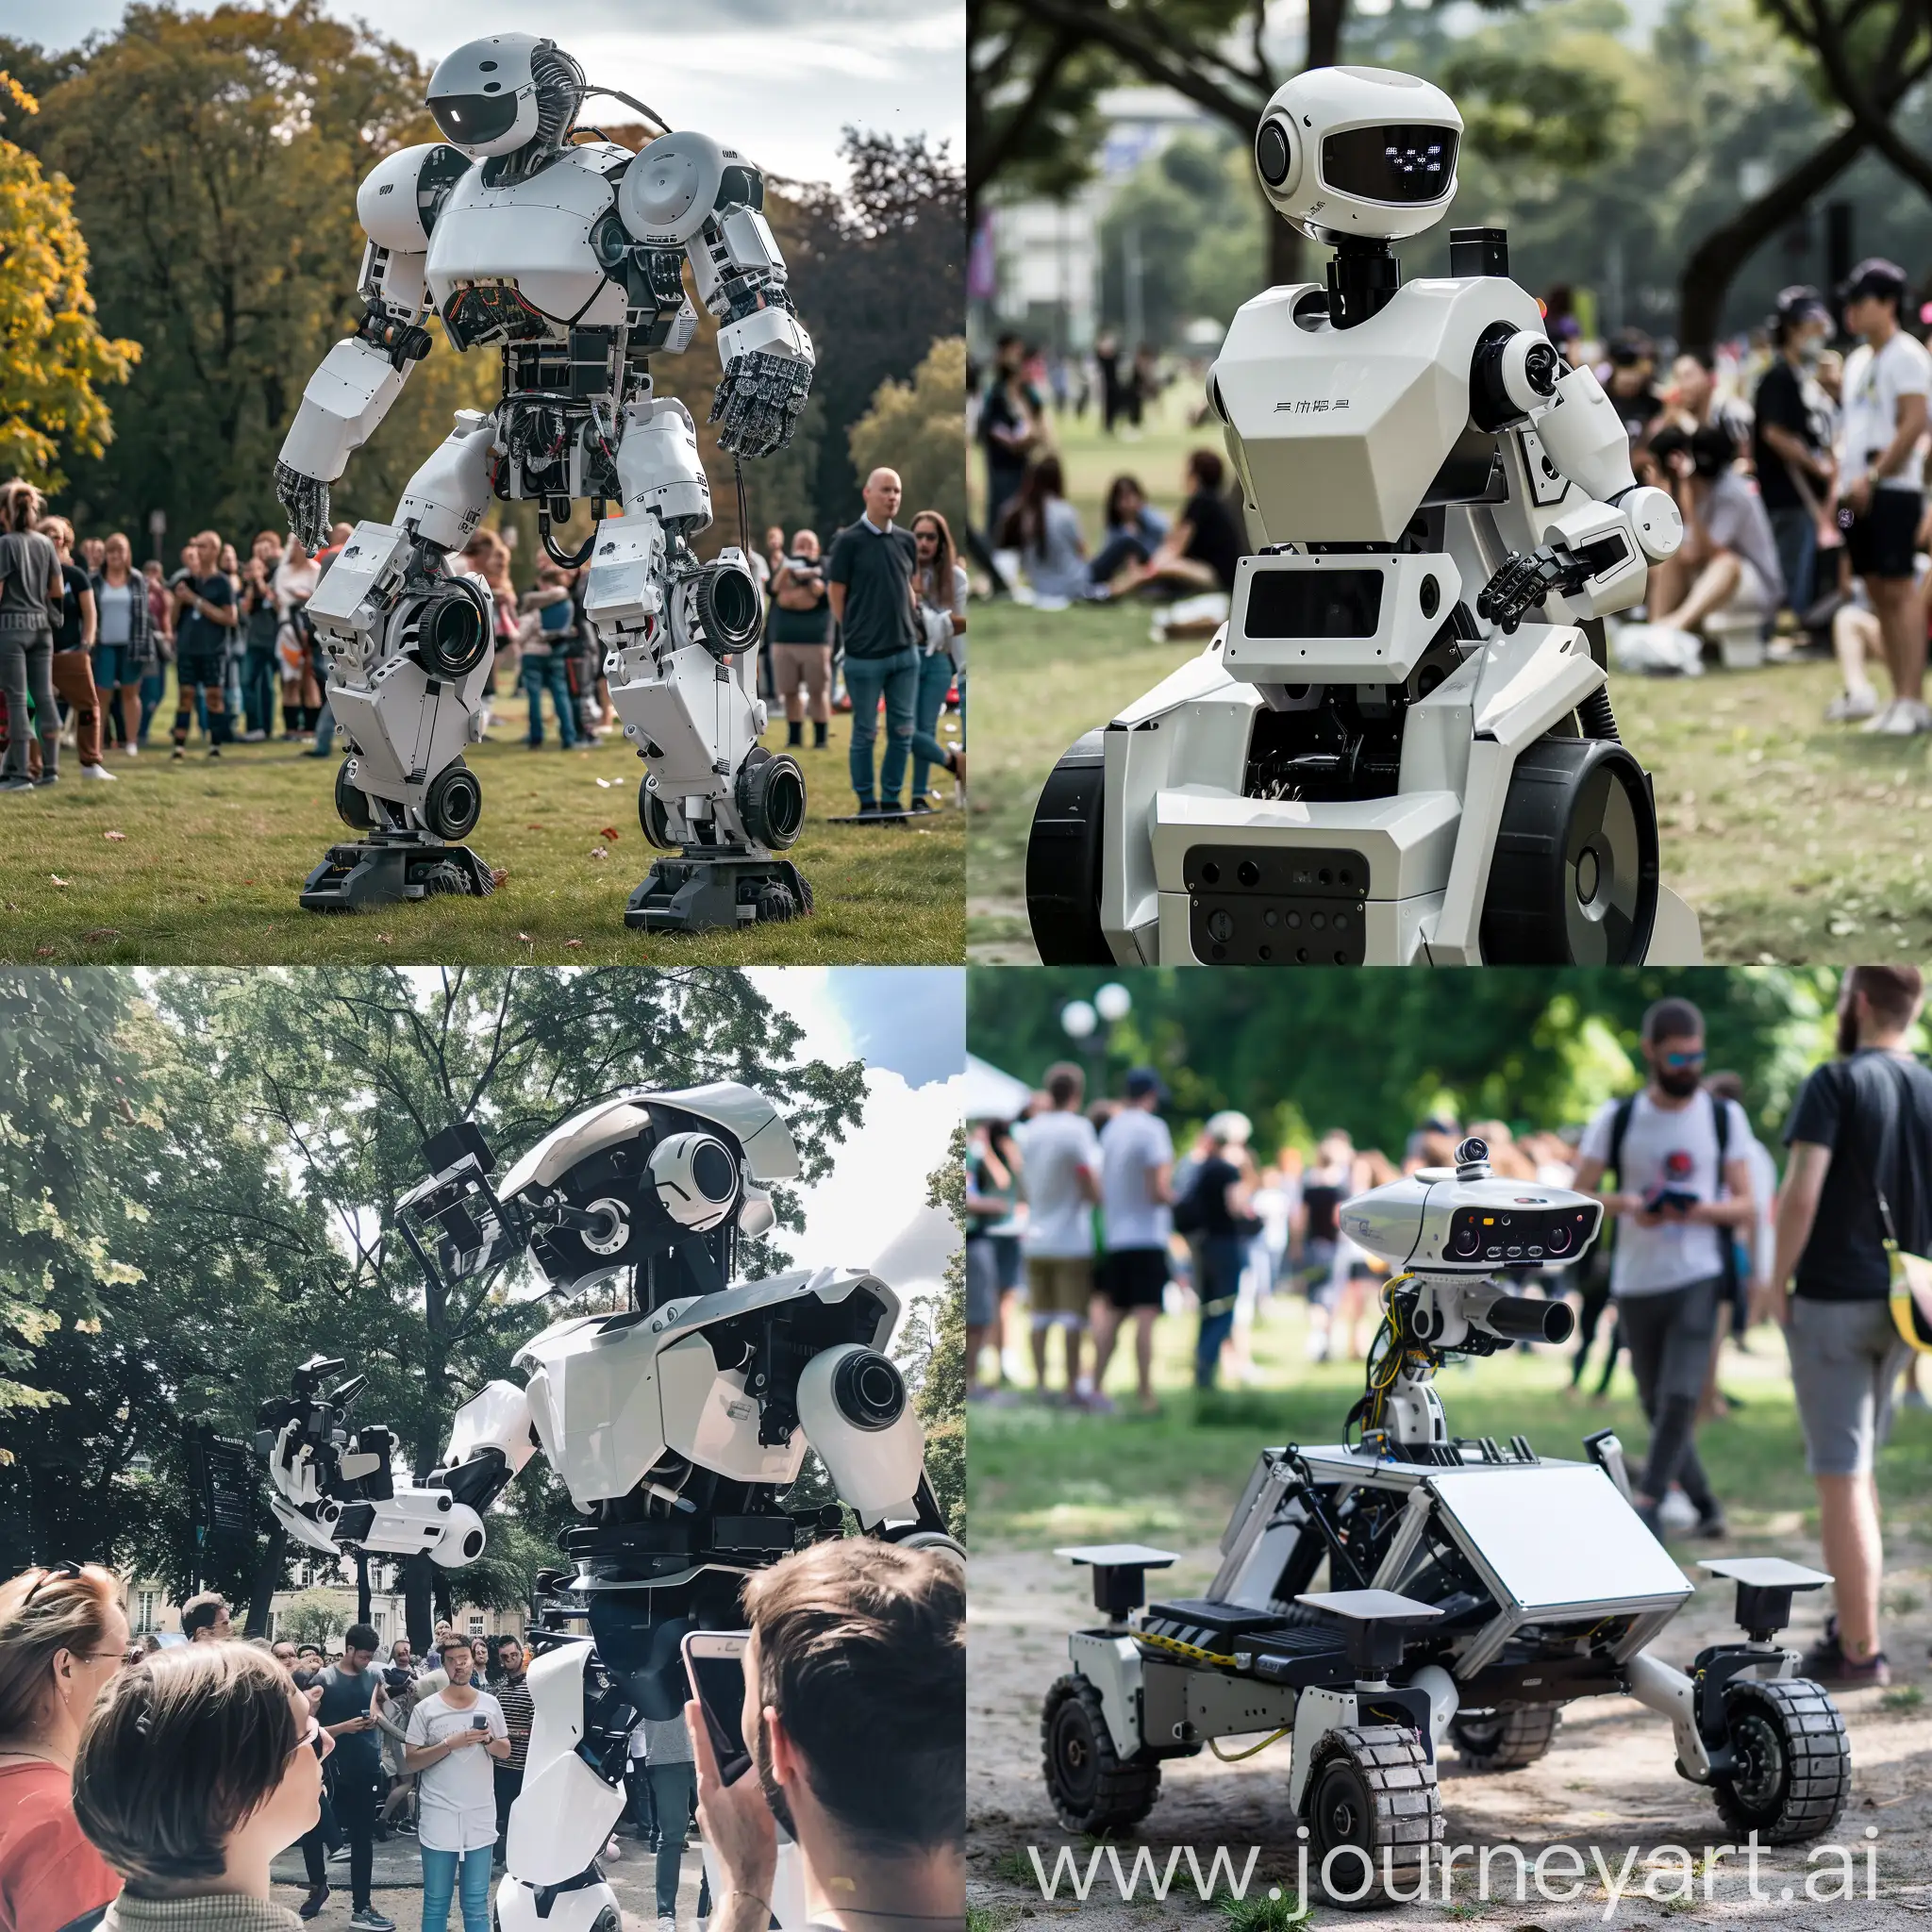 Futuristic-Robot-Showcase-in-the-Park